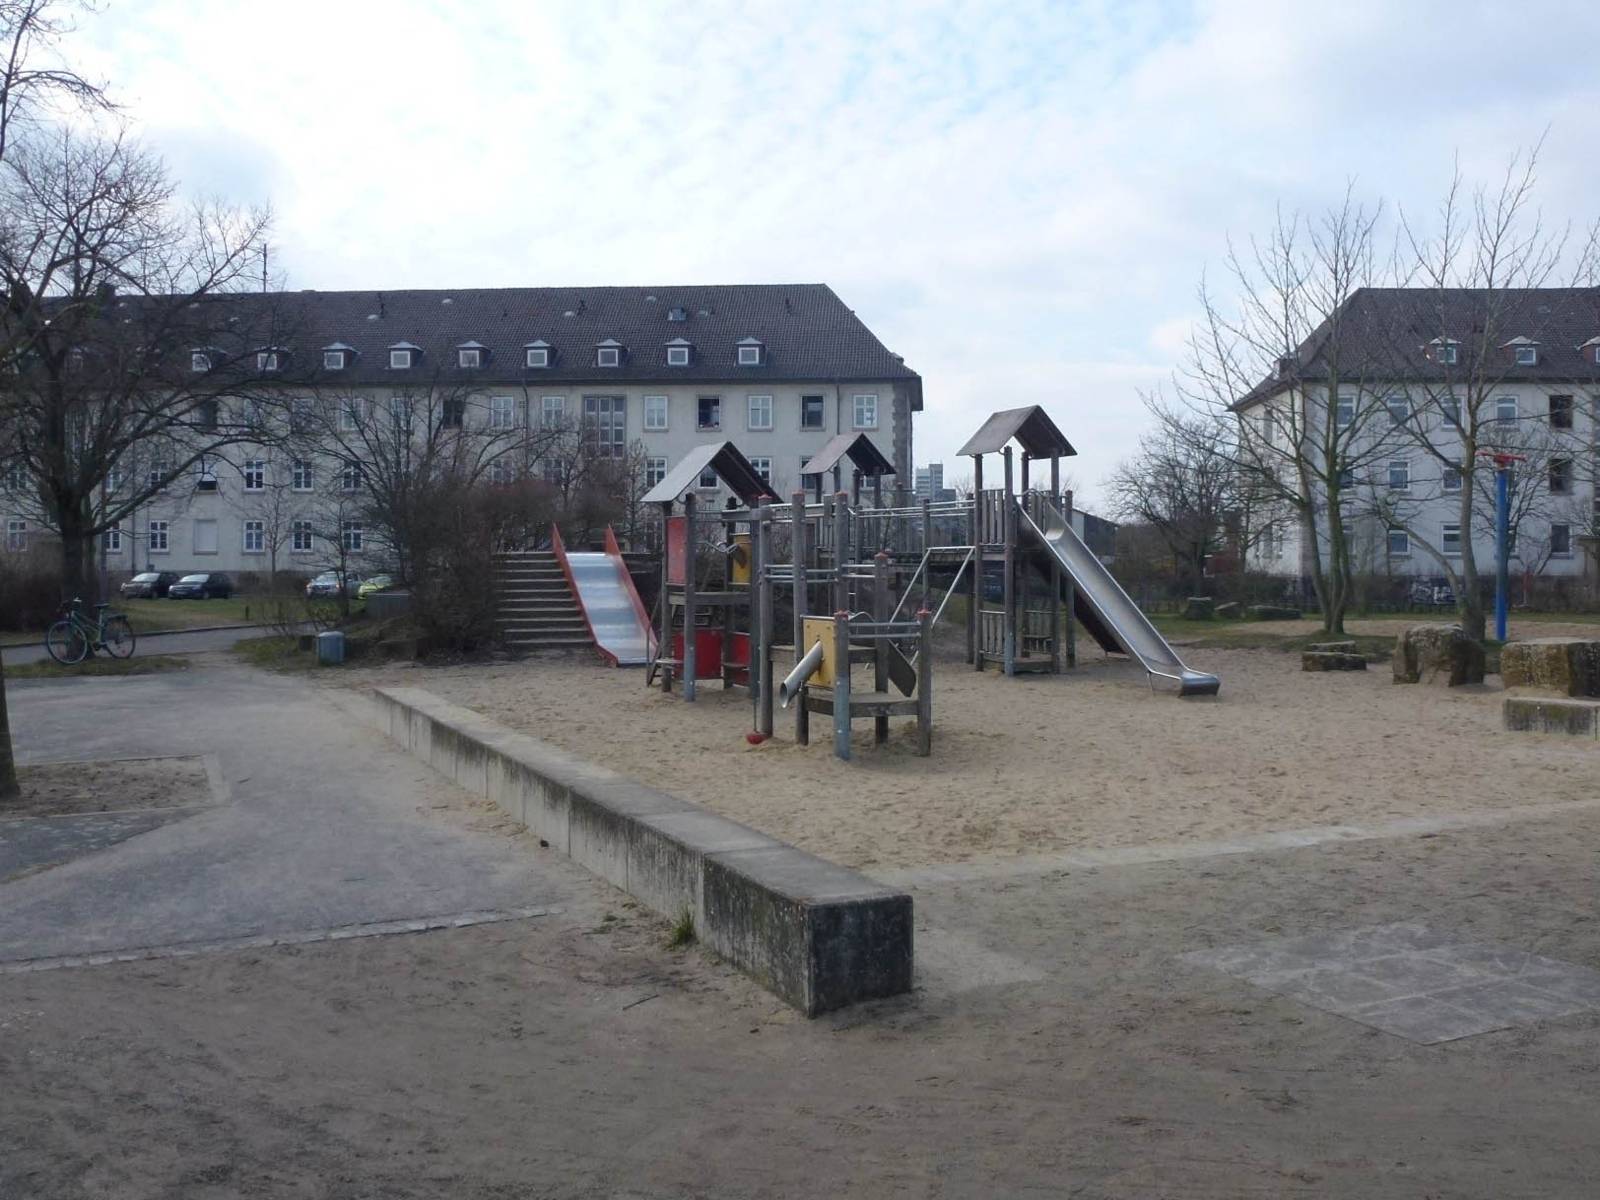 Spielplatz mit großer Sandfläche und Spielgeräten. 